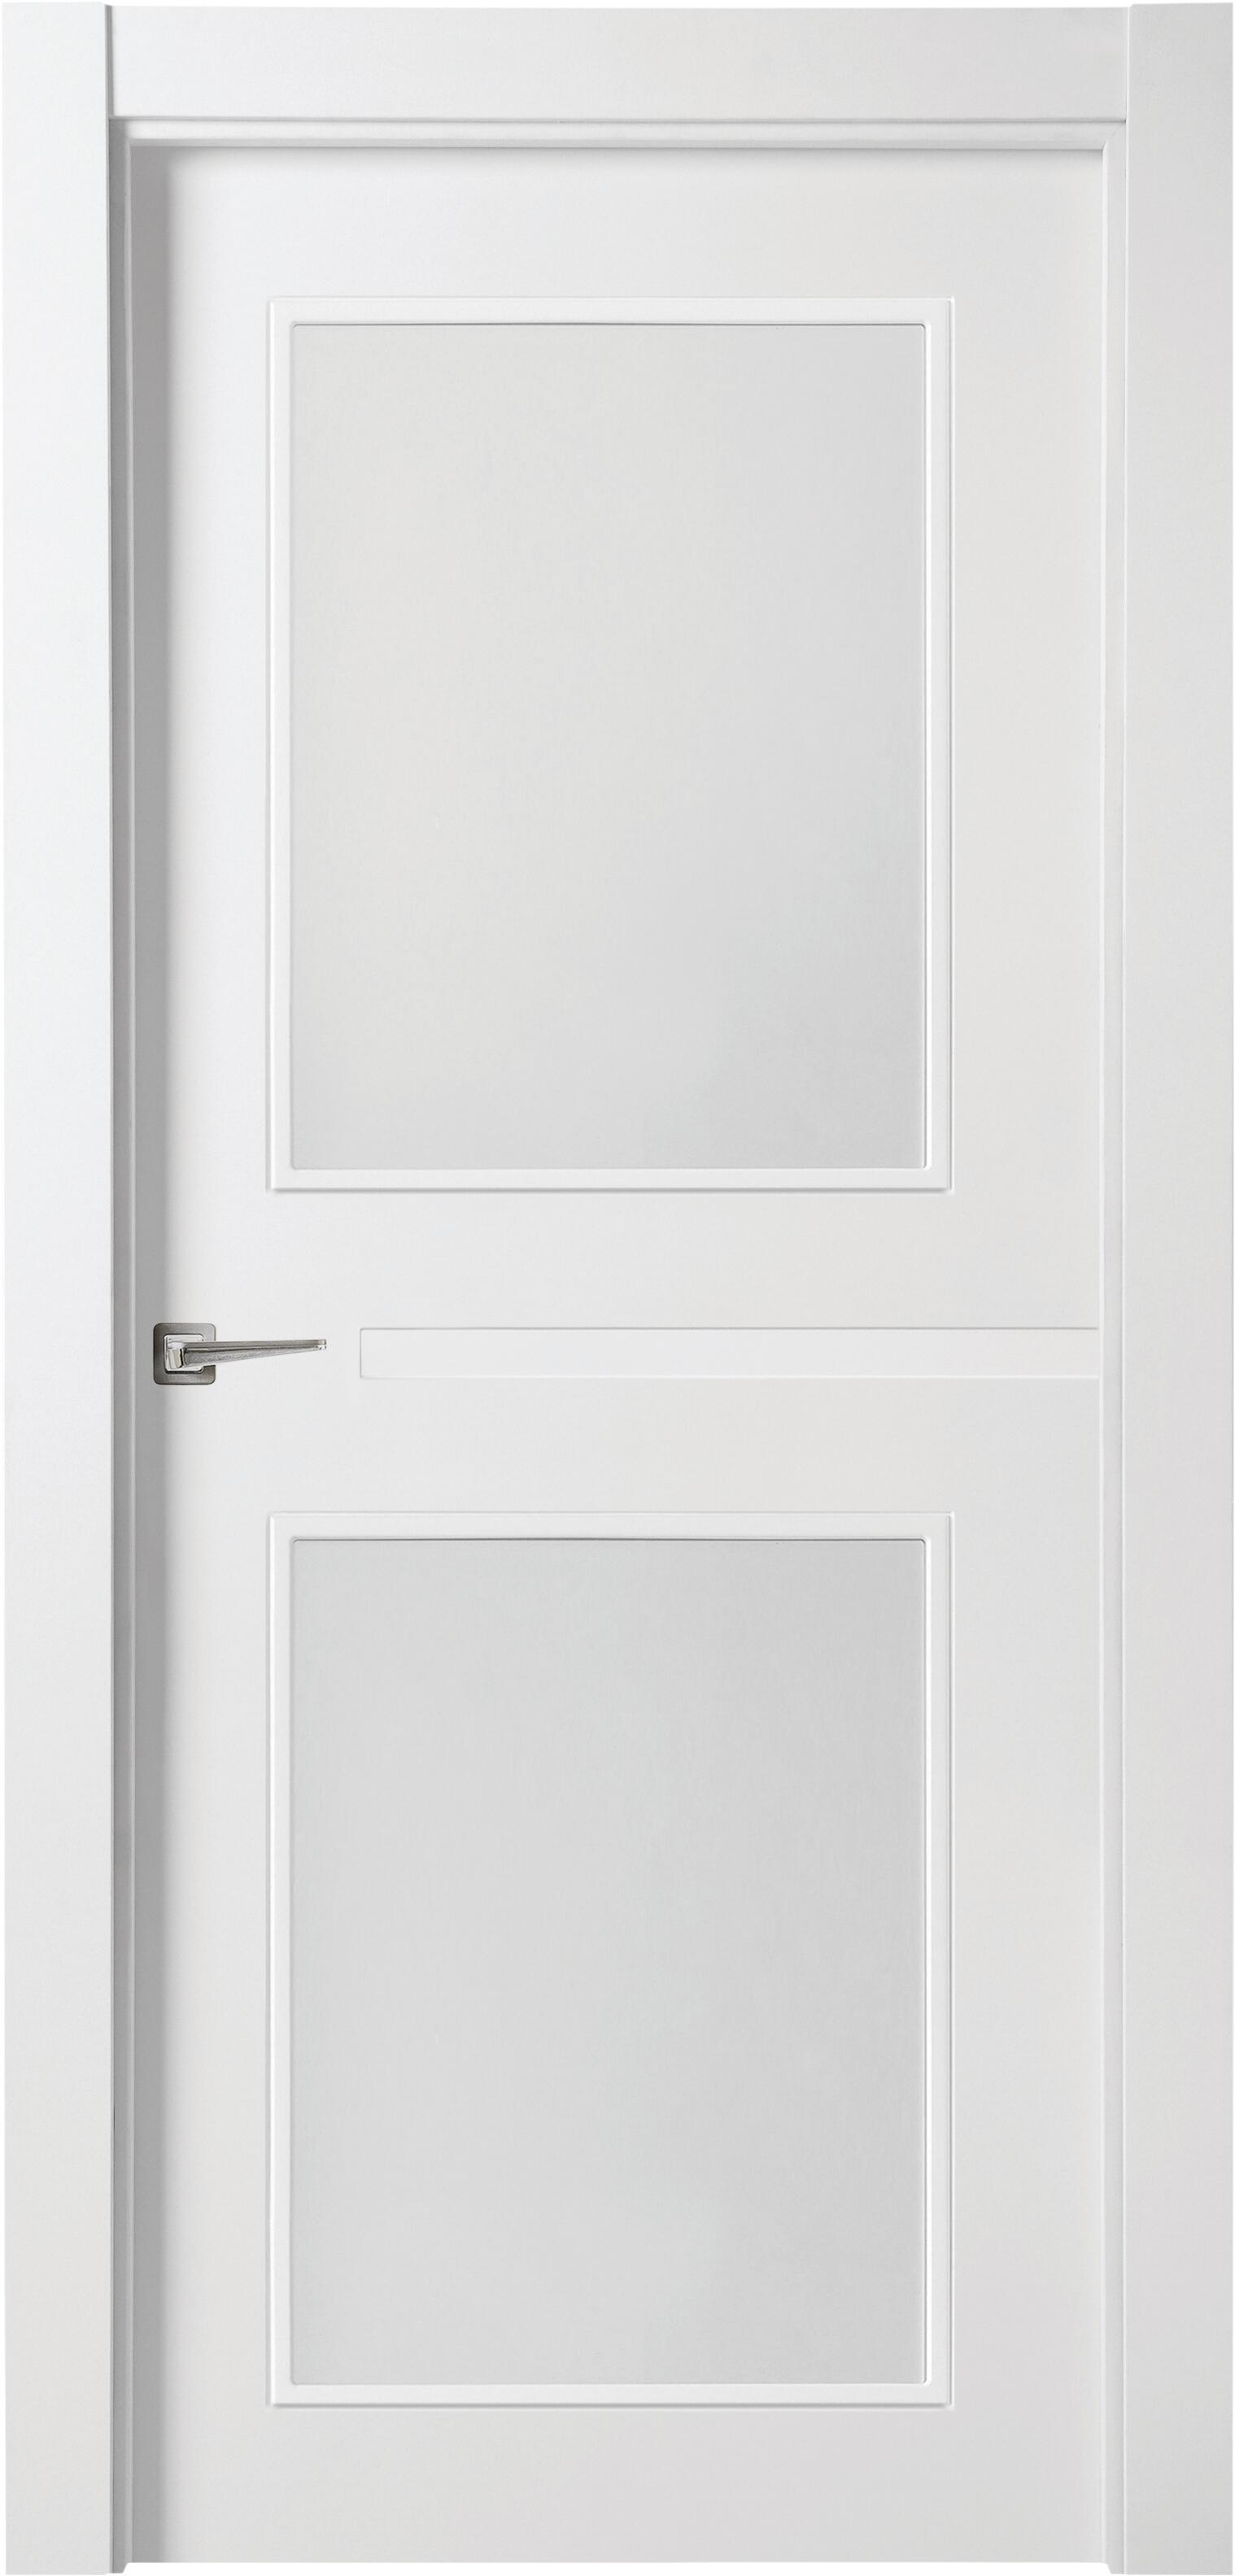 Puerta denver blanco apertura derecha con cristal de 9x82,5cm